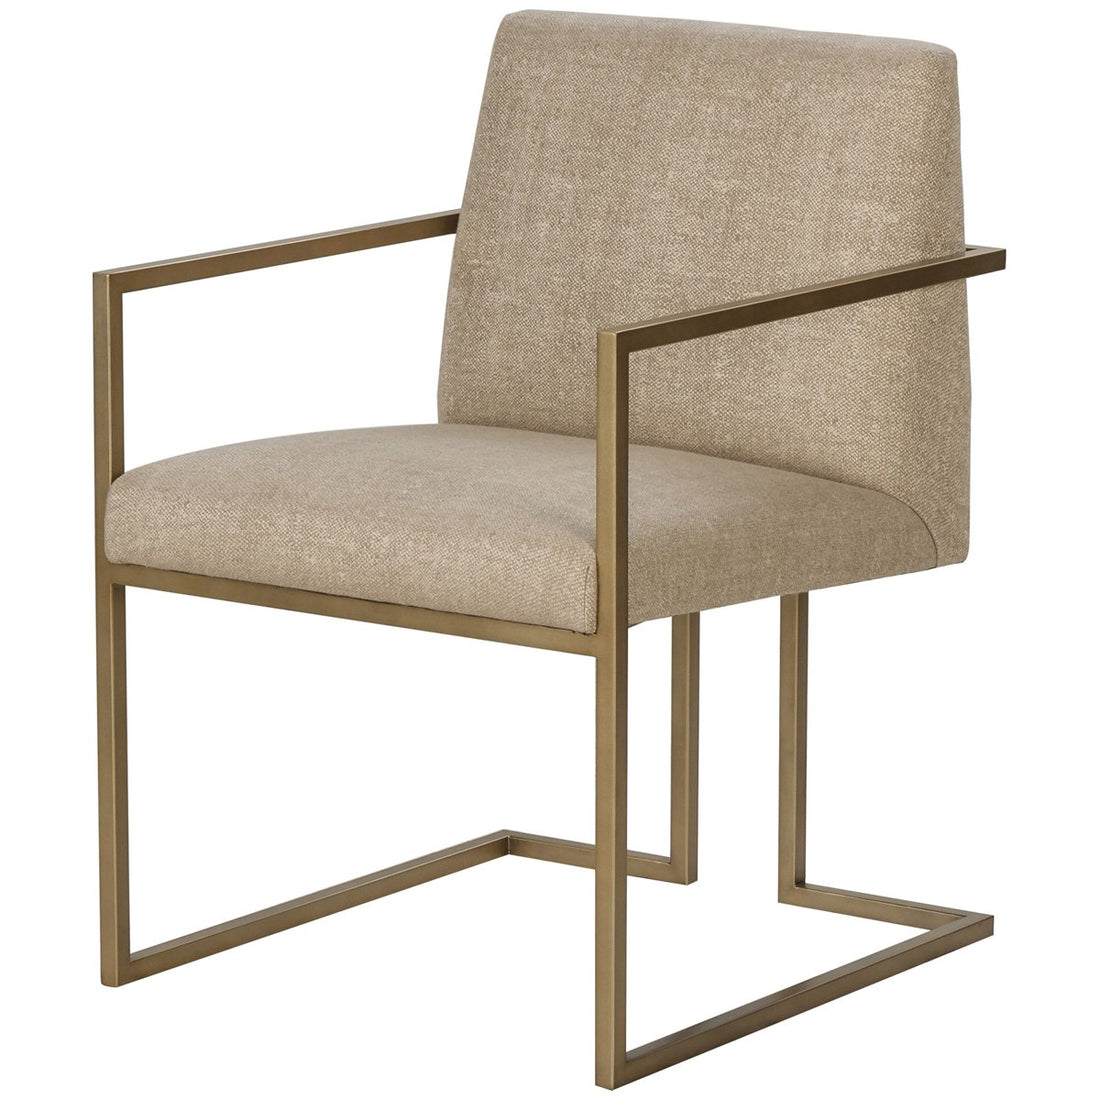 Sonder Living Ashton Arm Chair - Marley Hemp